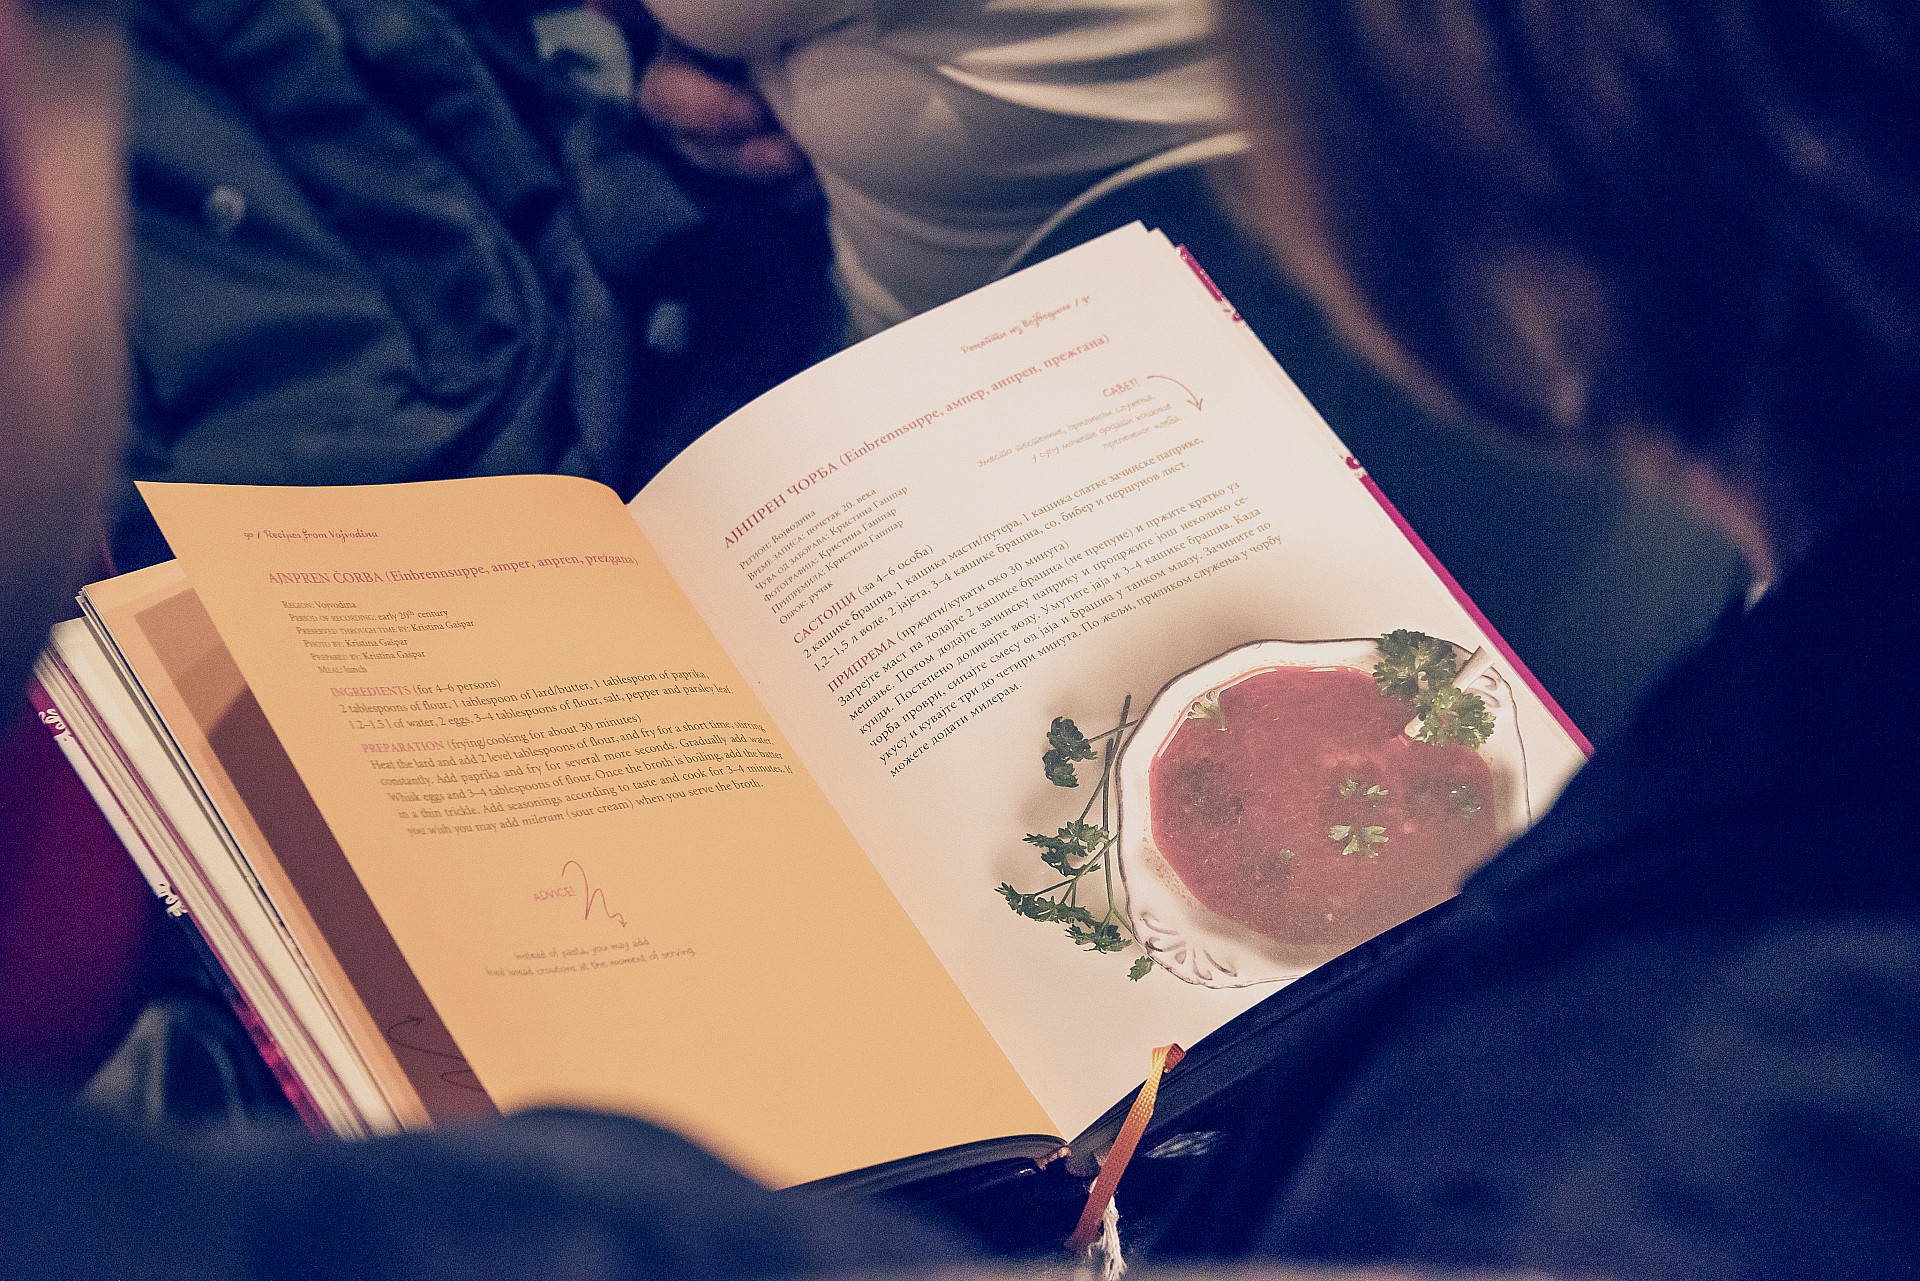 Aiutaci a pubblicare la seconda edizione del libro "Ricette tradizionali della cucina serba"